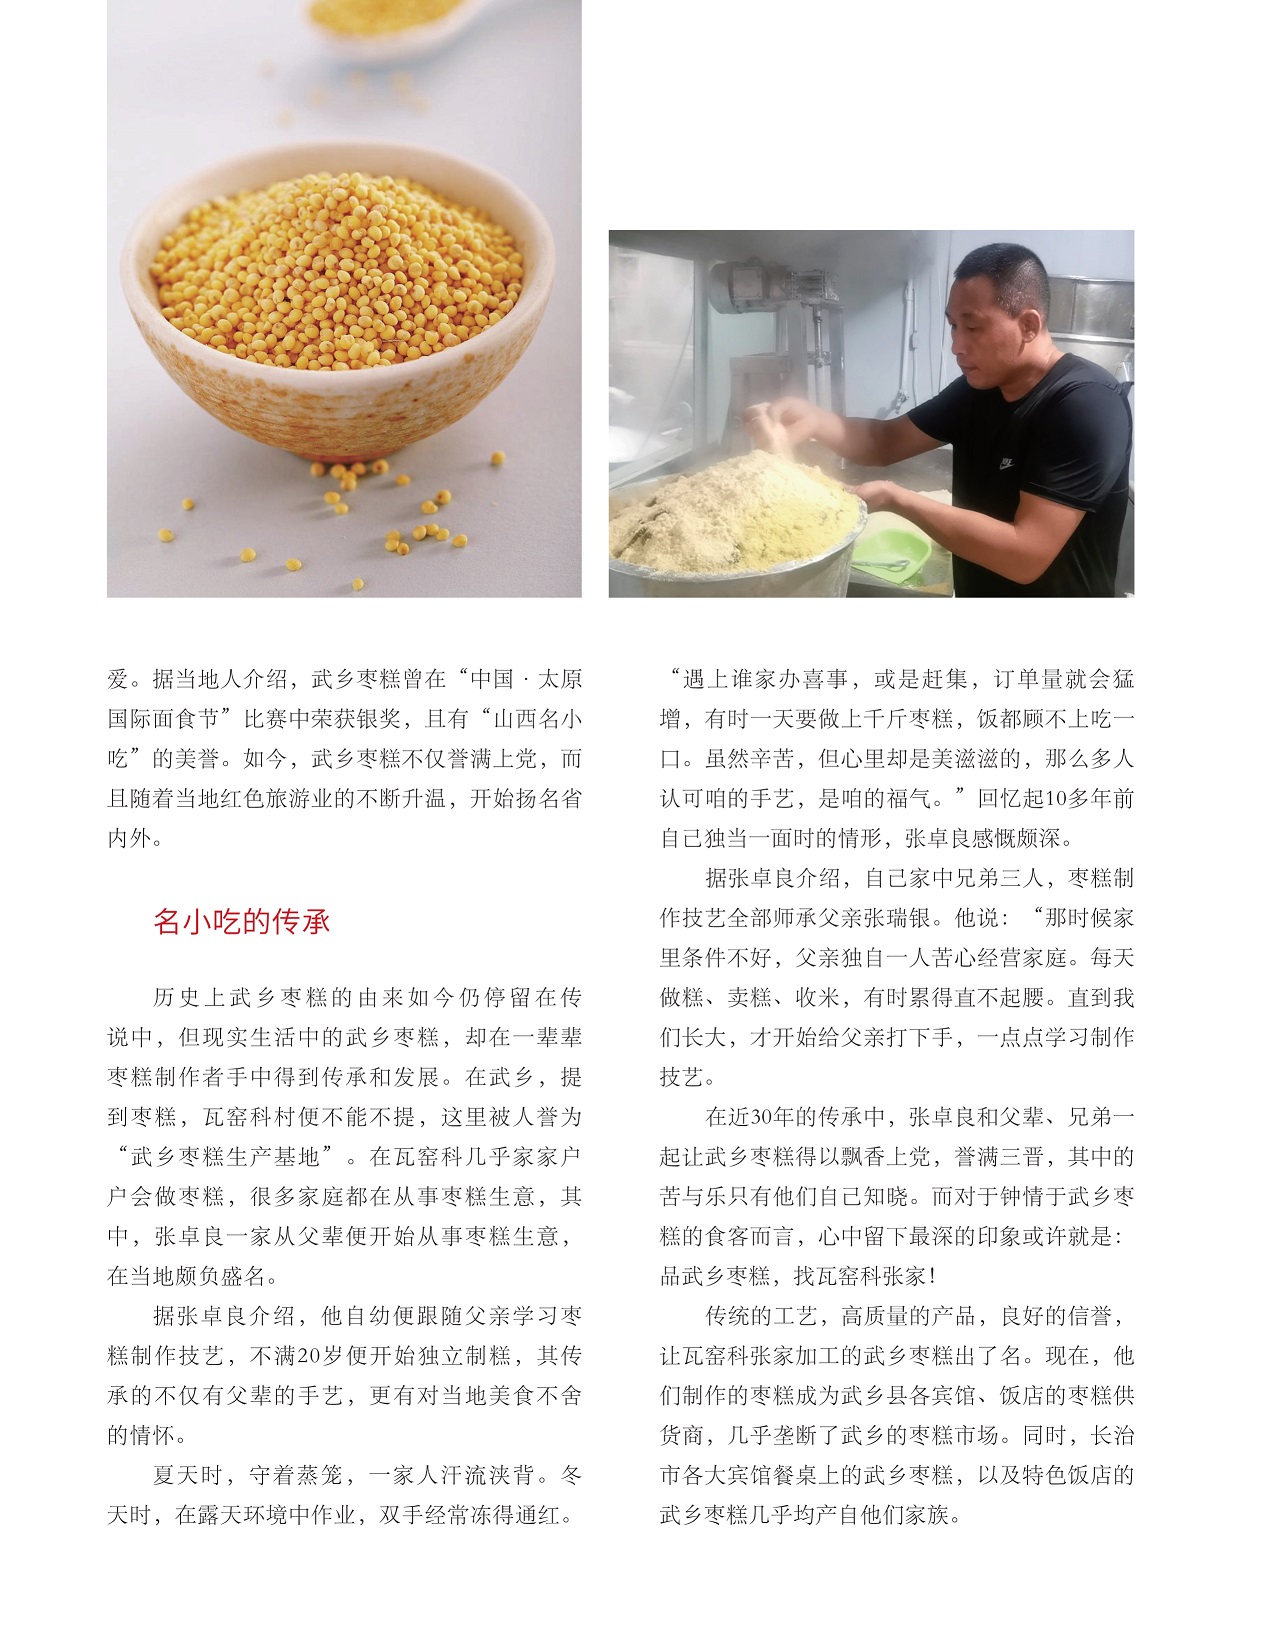 名小吃的传承,武乡枣糕几乎均产自瓦窑科张家